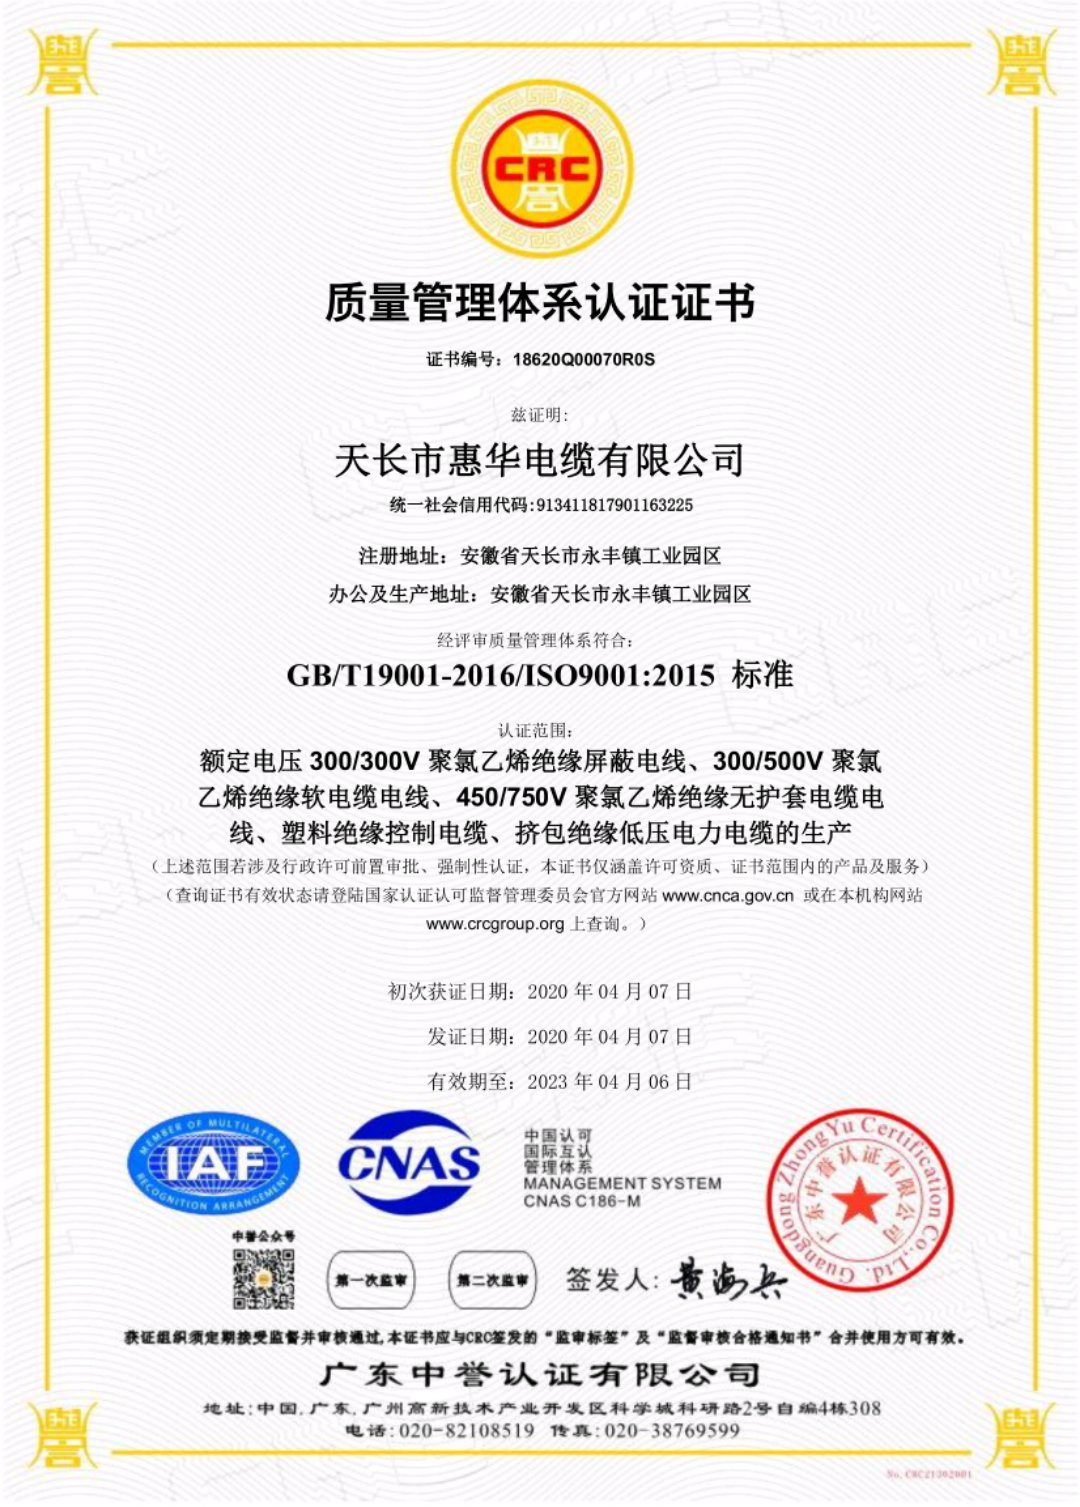 认证证书 中文